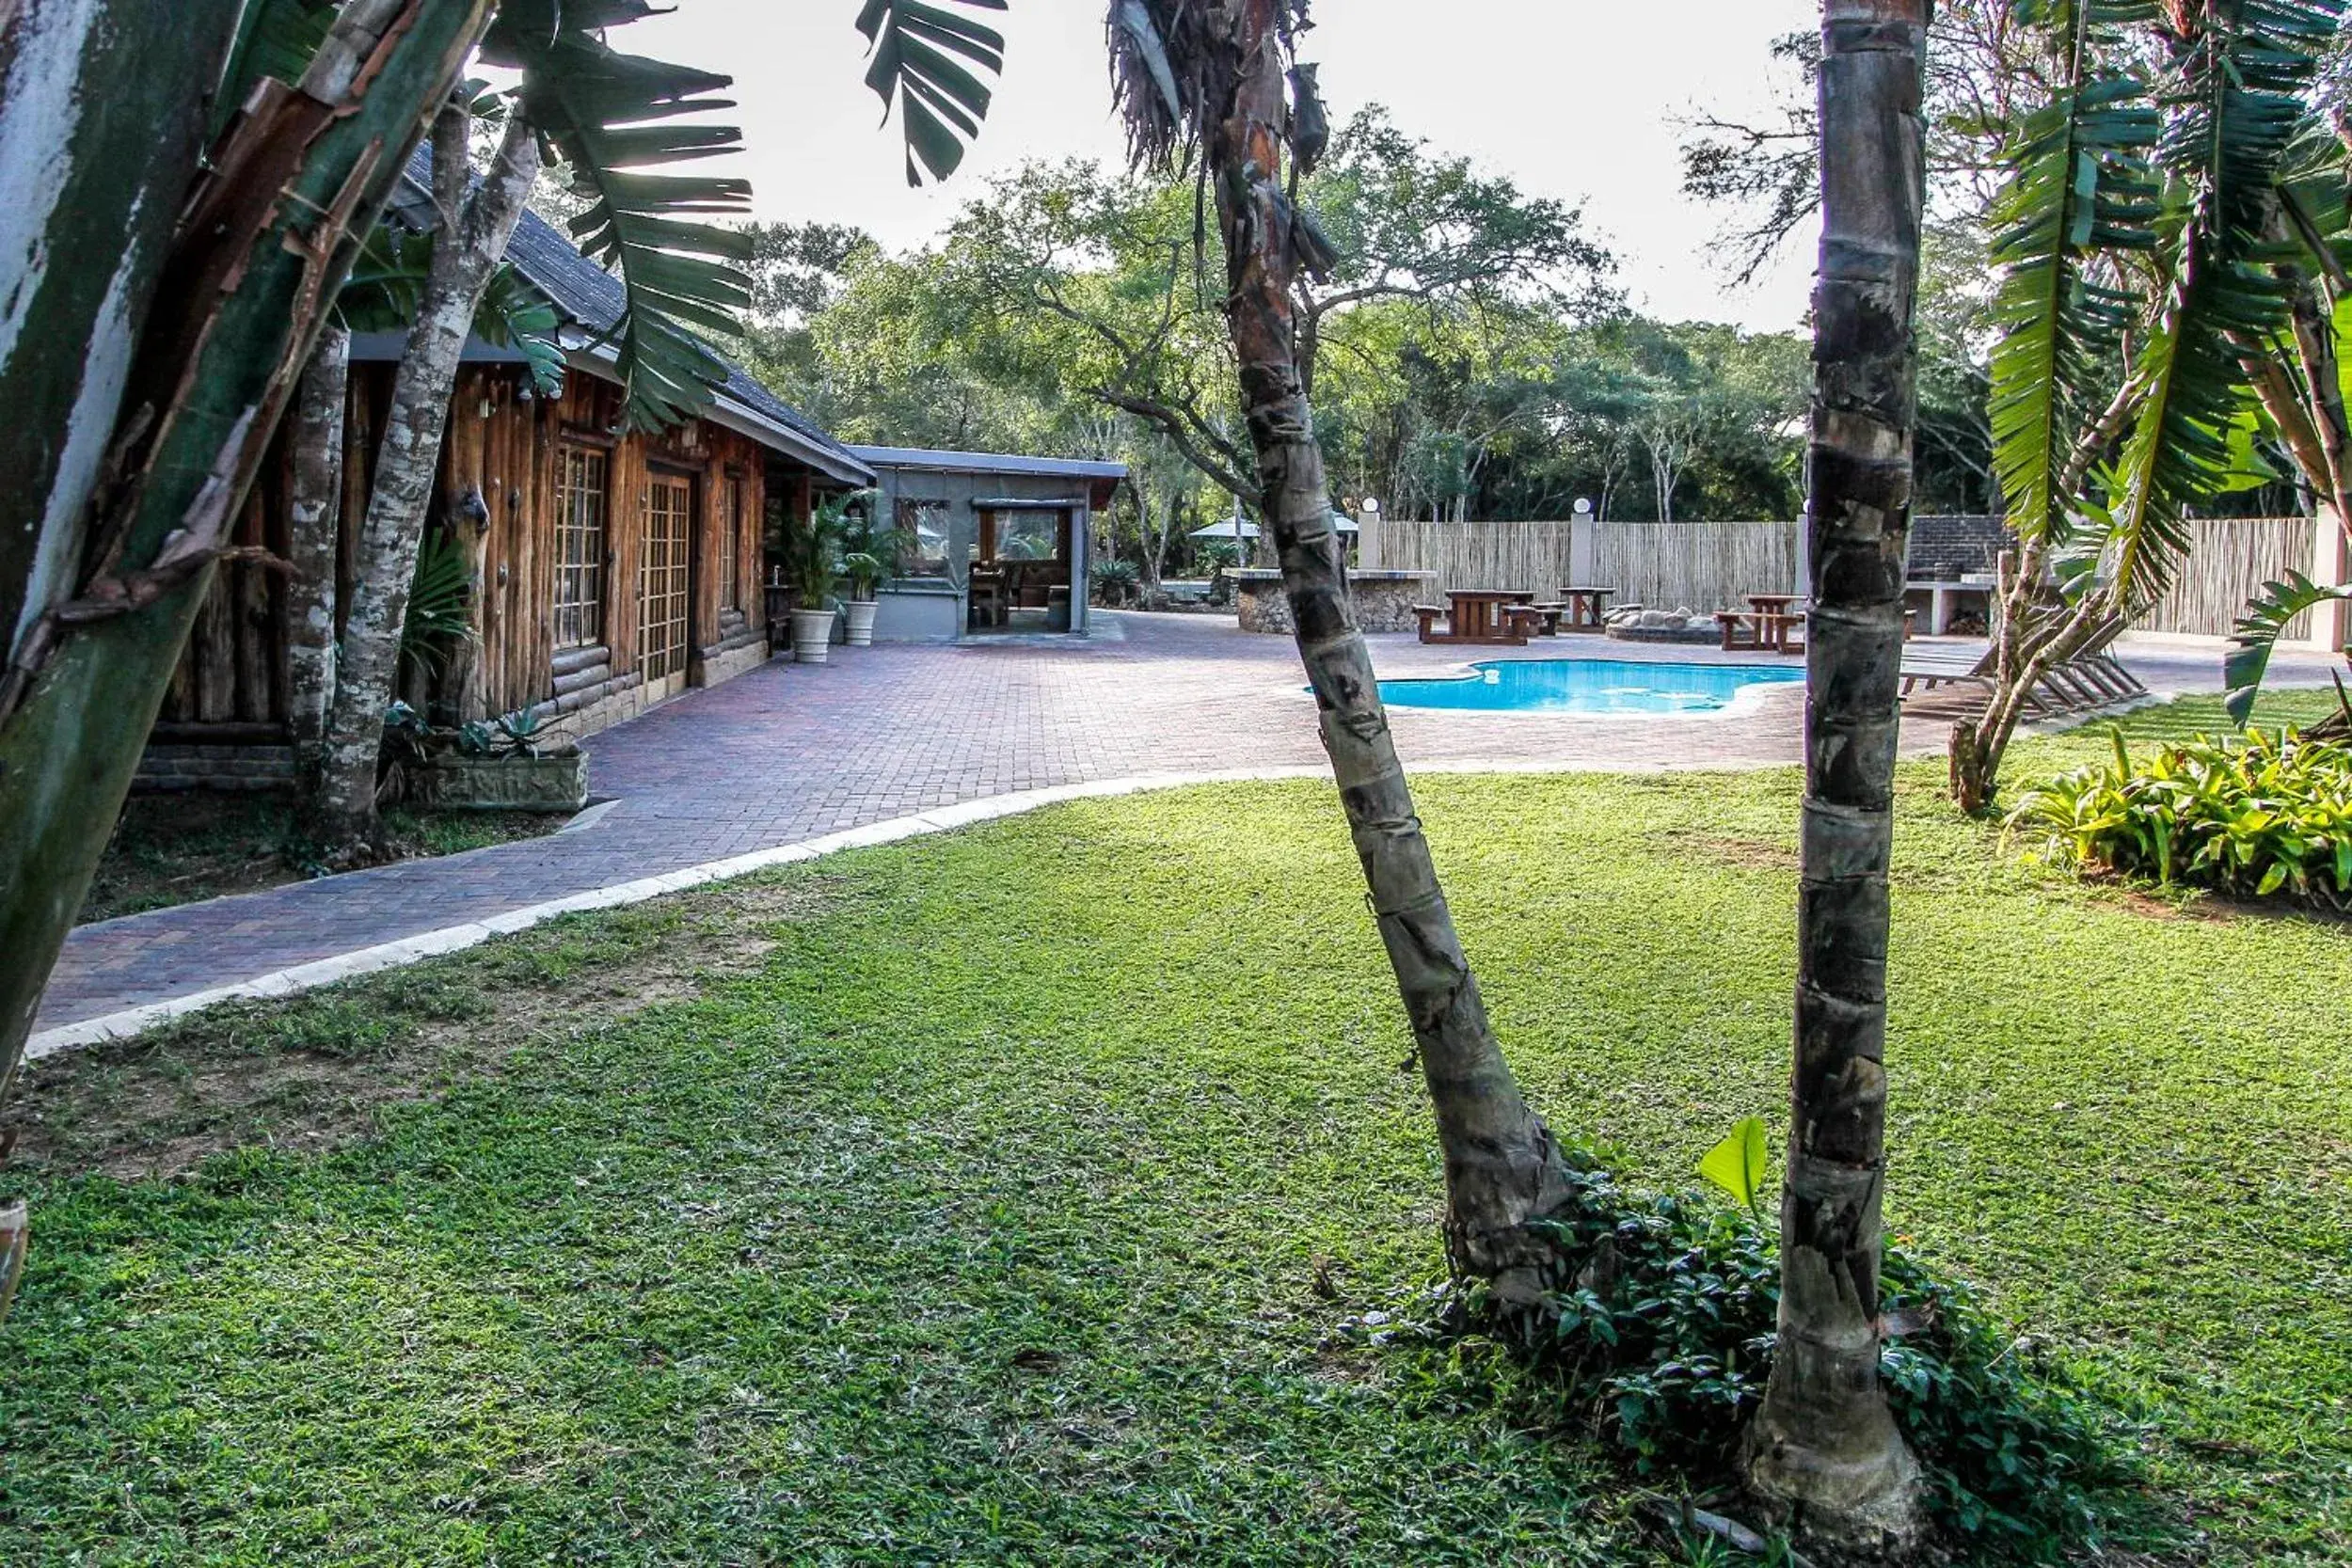 Property building, Swimming Pool in Ezulwini Game Lodge